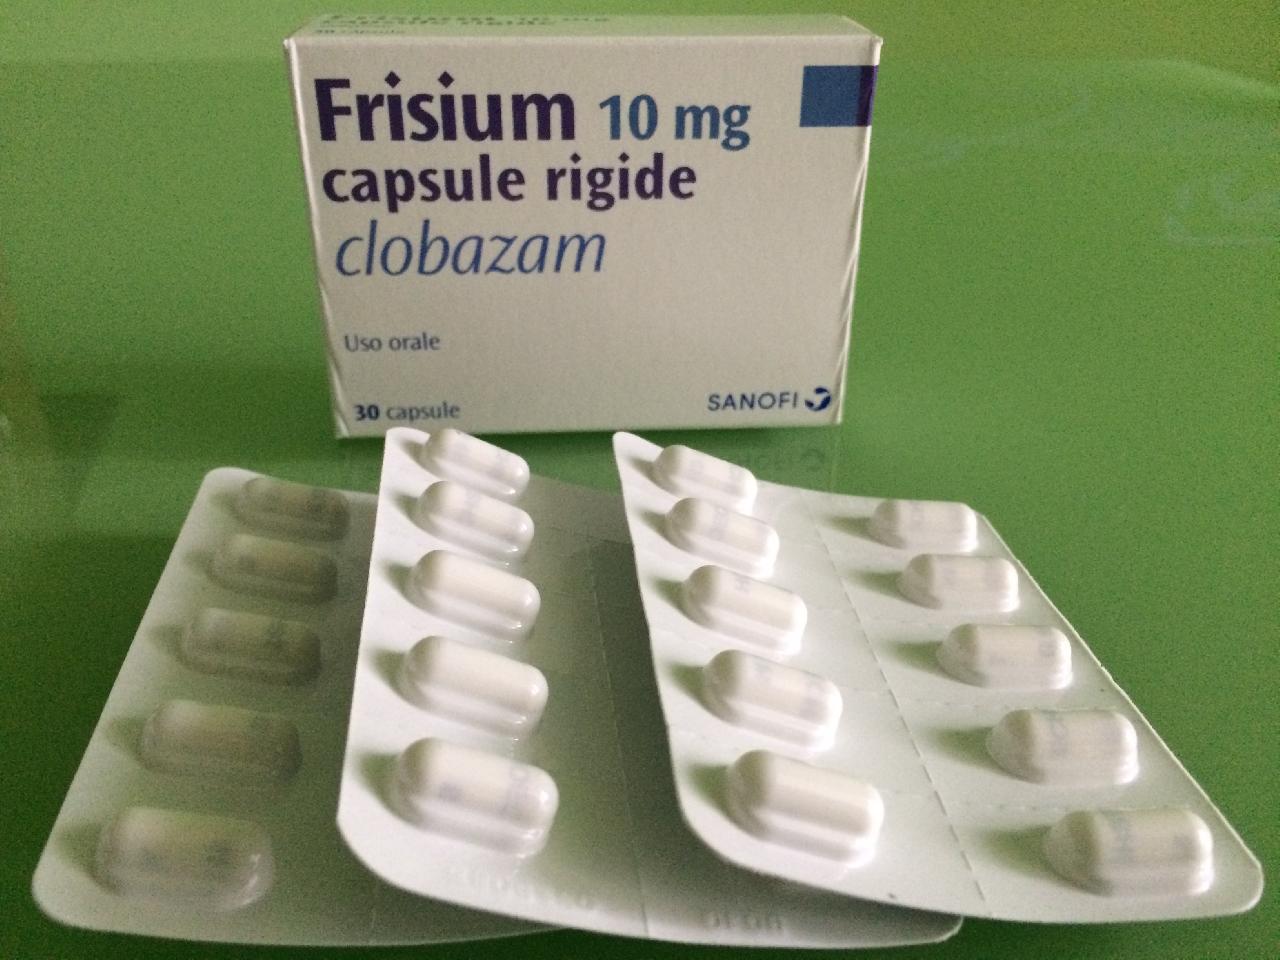 Минздрав зарегистрировал противосудорожный лекарственный препарат «Фризиум» (Клобазам)